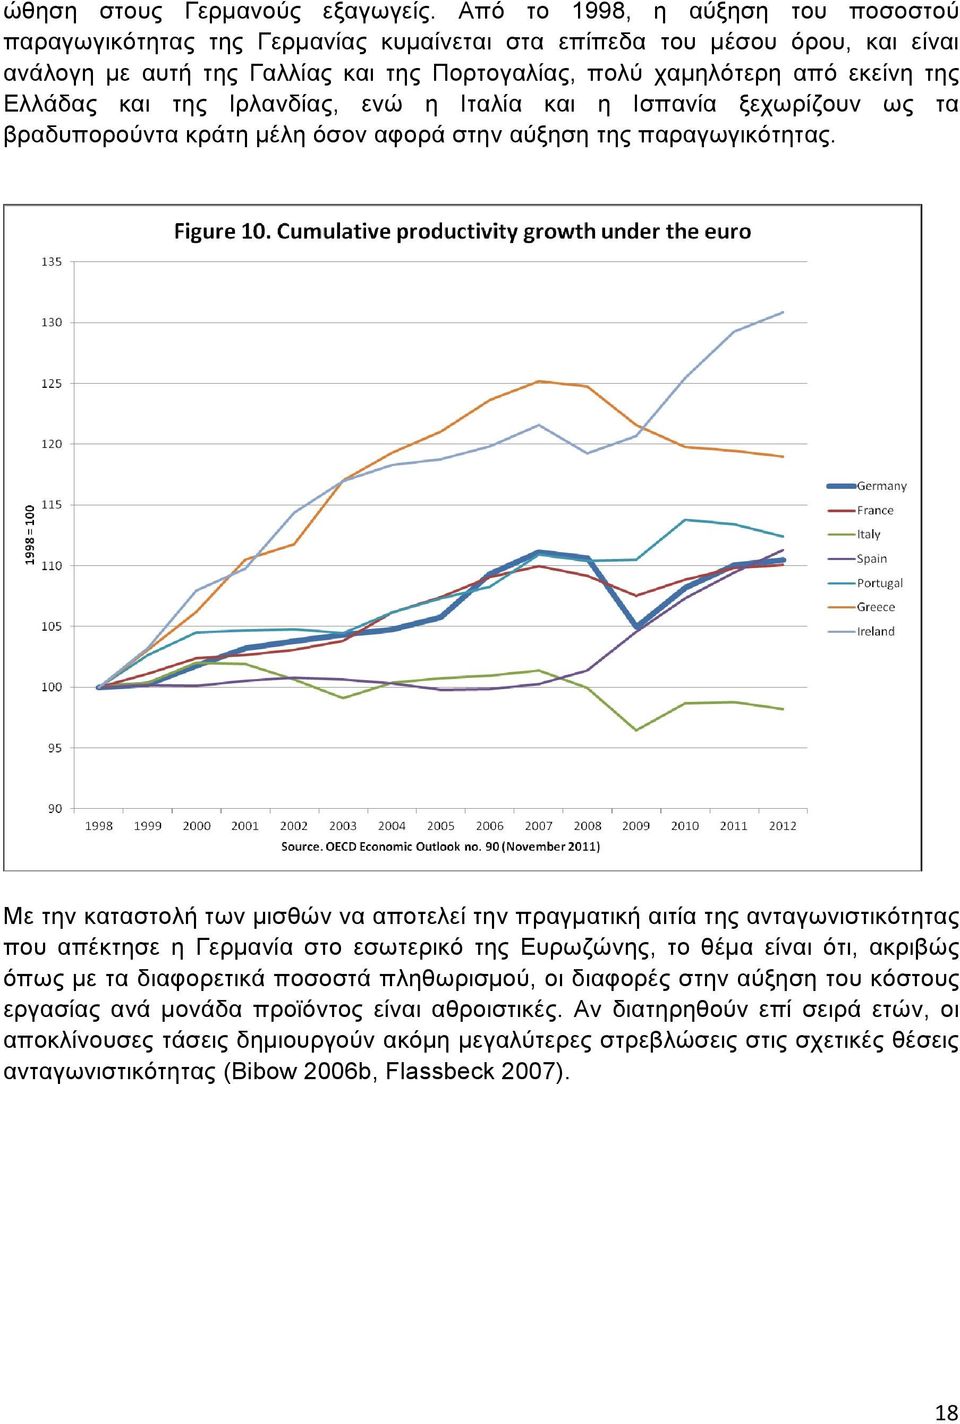 Ελλάδας και της Ιρλανδίας, ενώ η Ιταλία και η Ισπανία ξεχωρίζουν ως τα βραδυπορούντα κράτη µέλη όσον αφορά στην αύξηση της παραγωγικότητας.